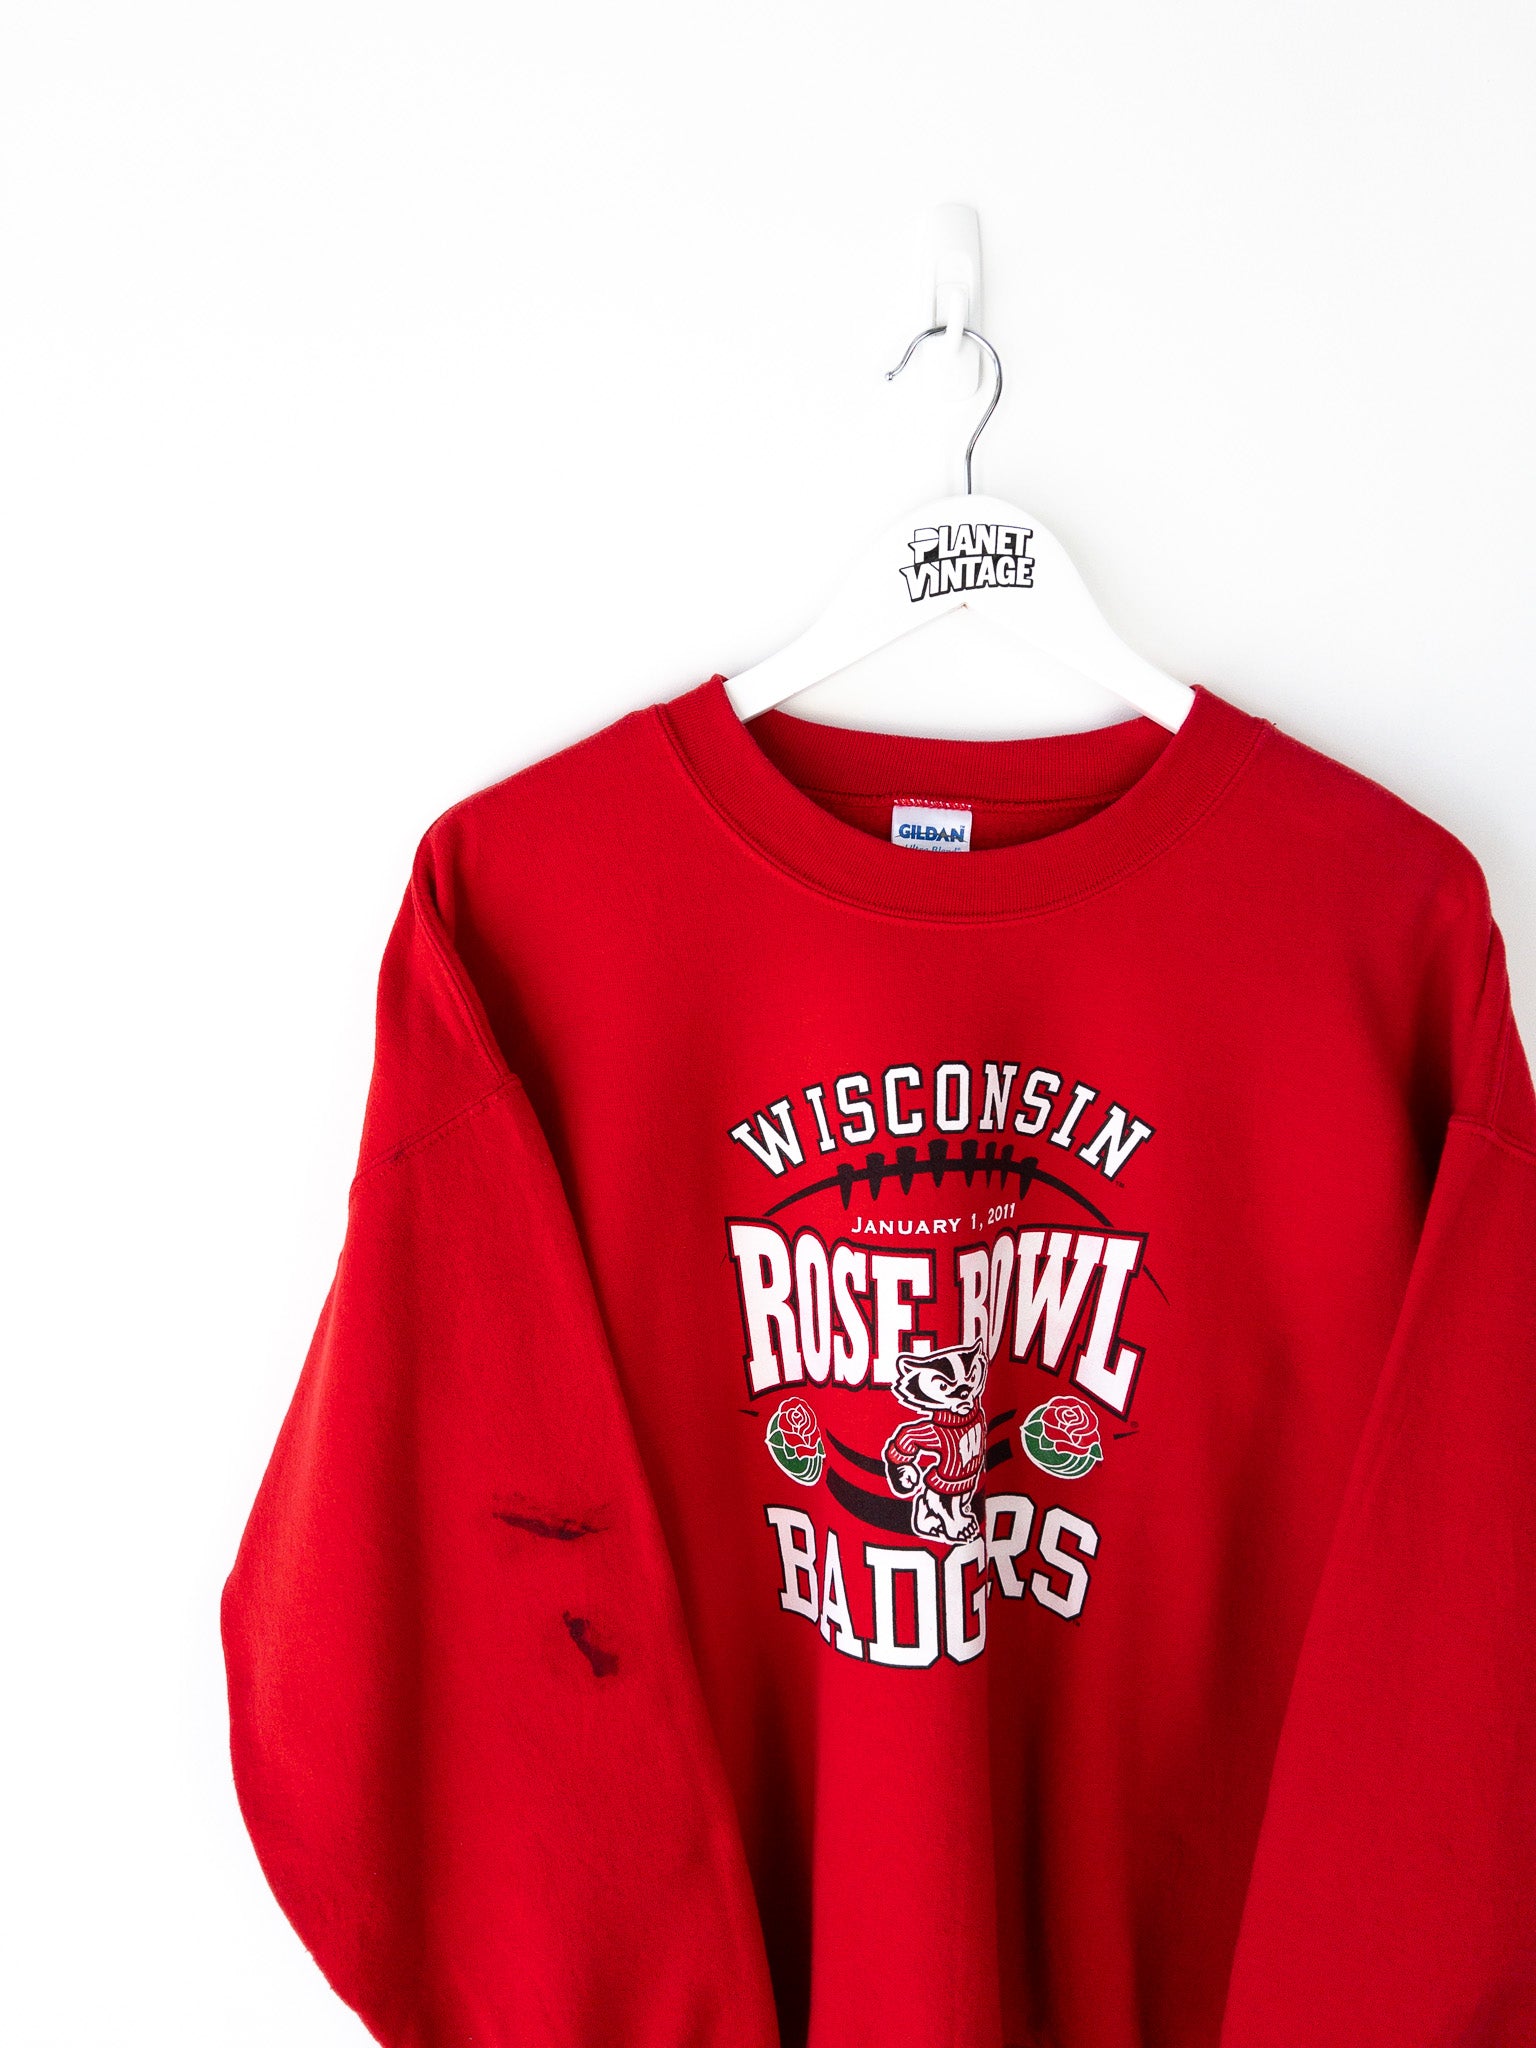 Vintage Wisconsin Badgers Rose Bowl Sweatshirt (L)